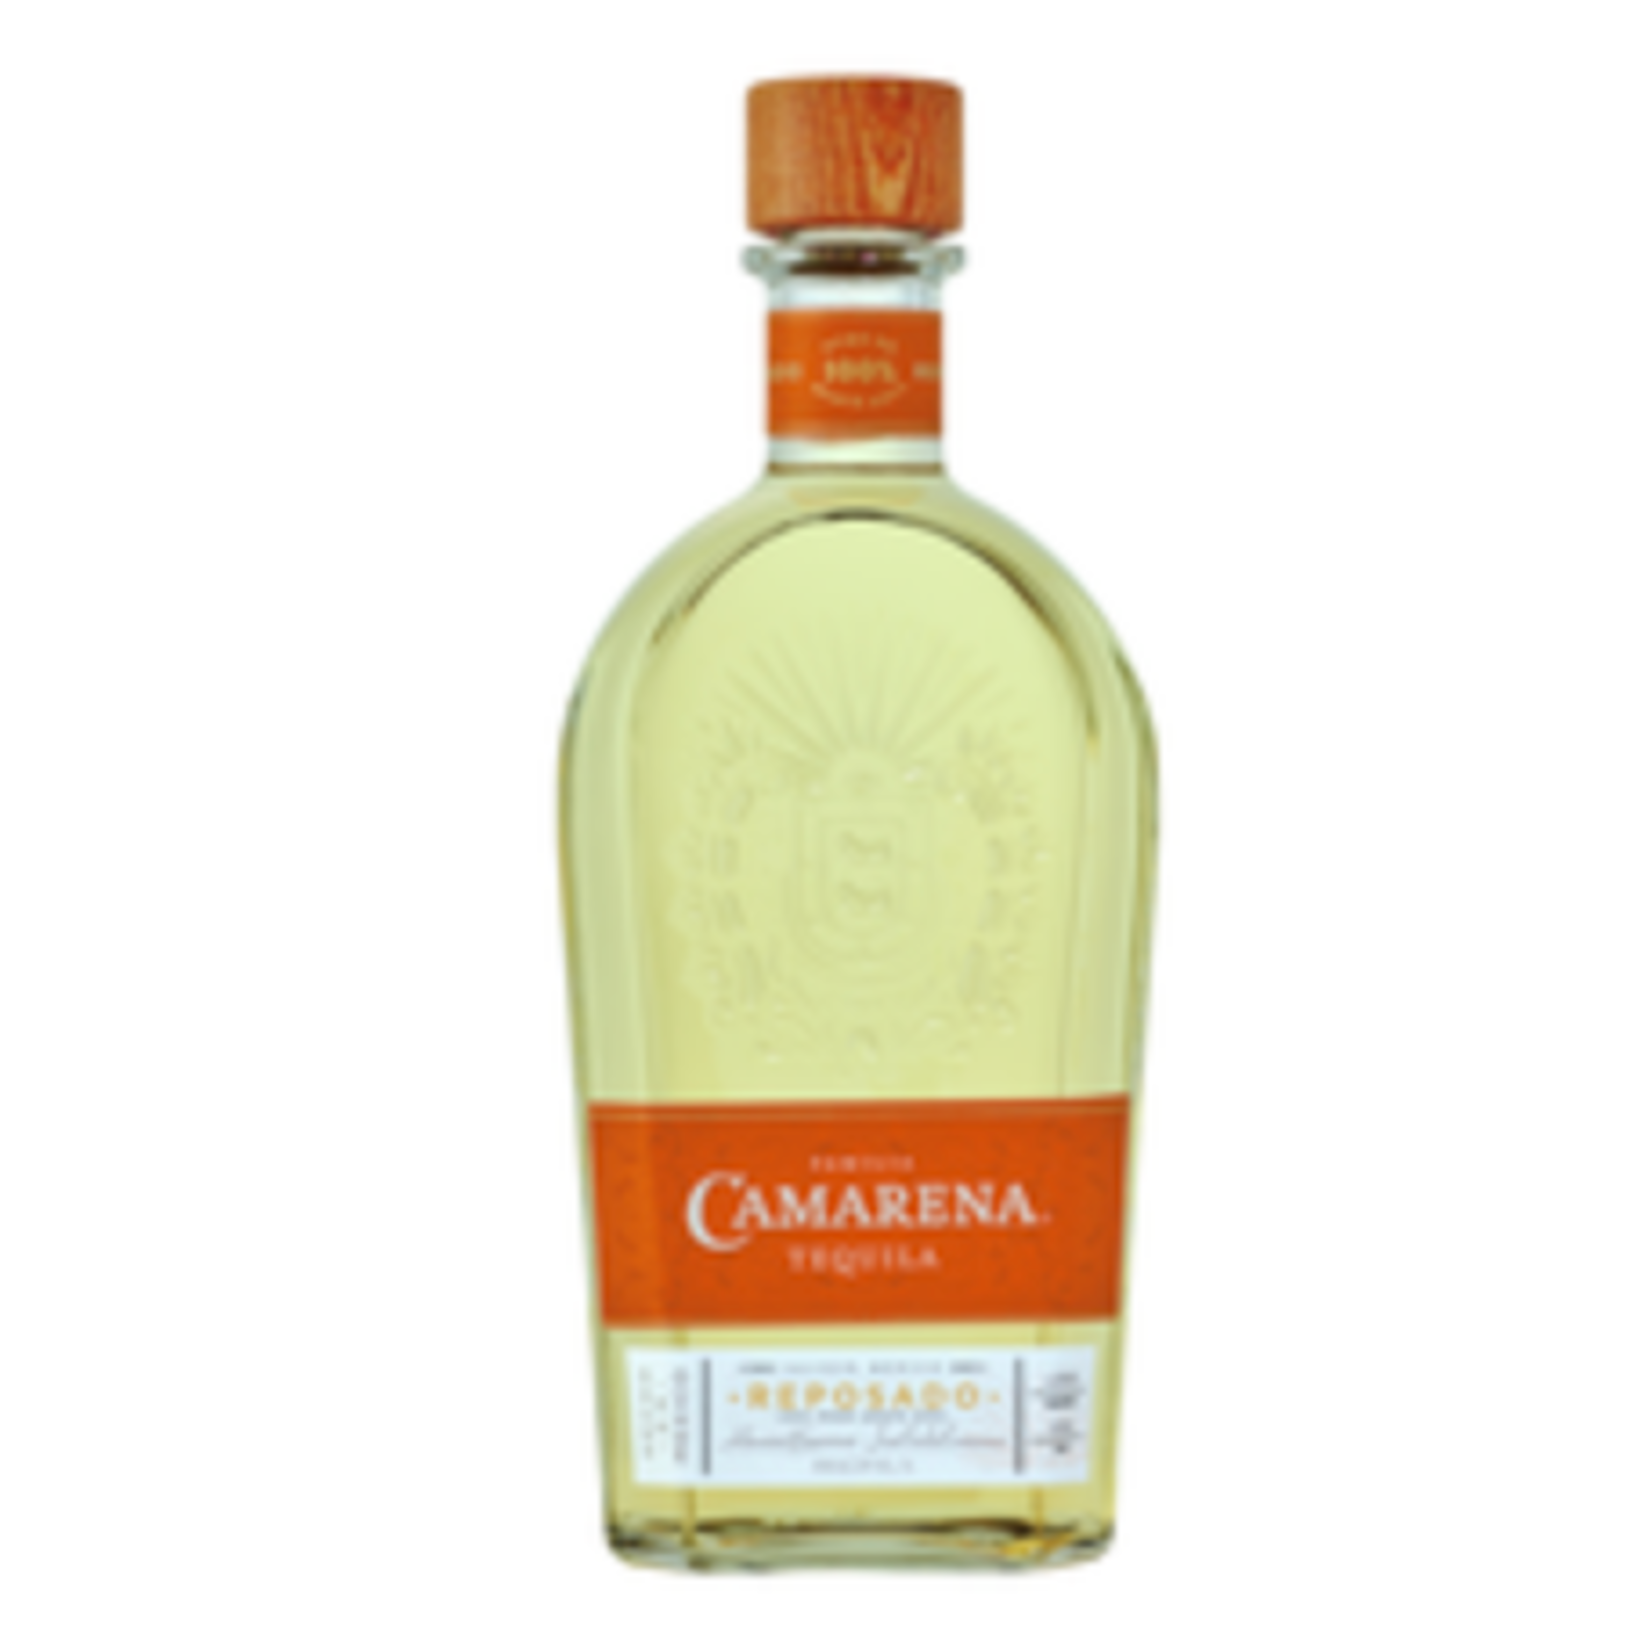 Camarena, Reposado Tequila 750ml